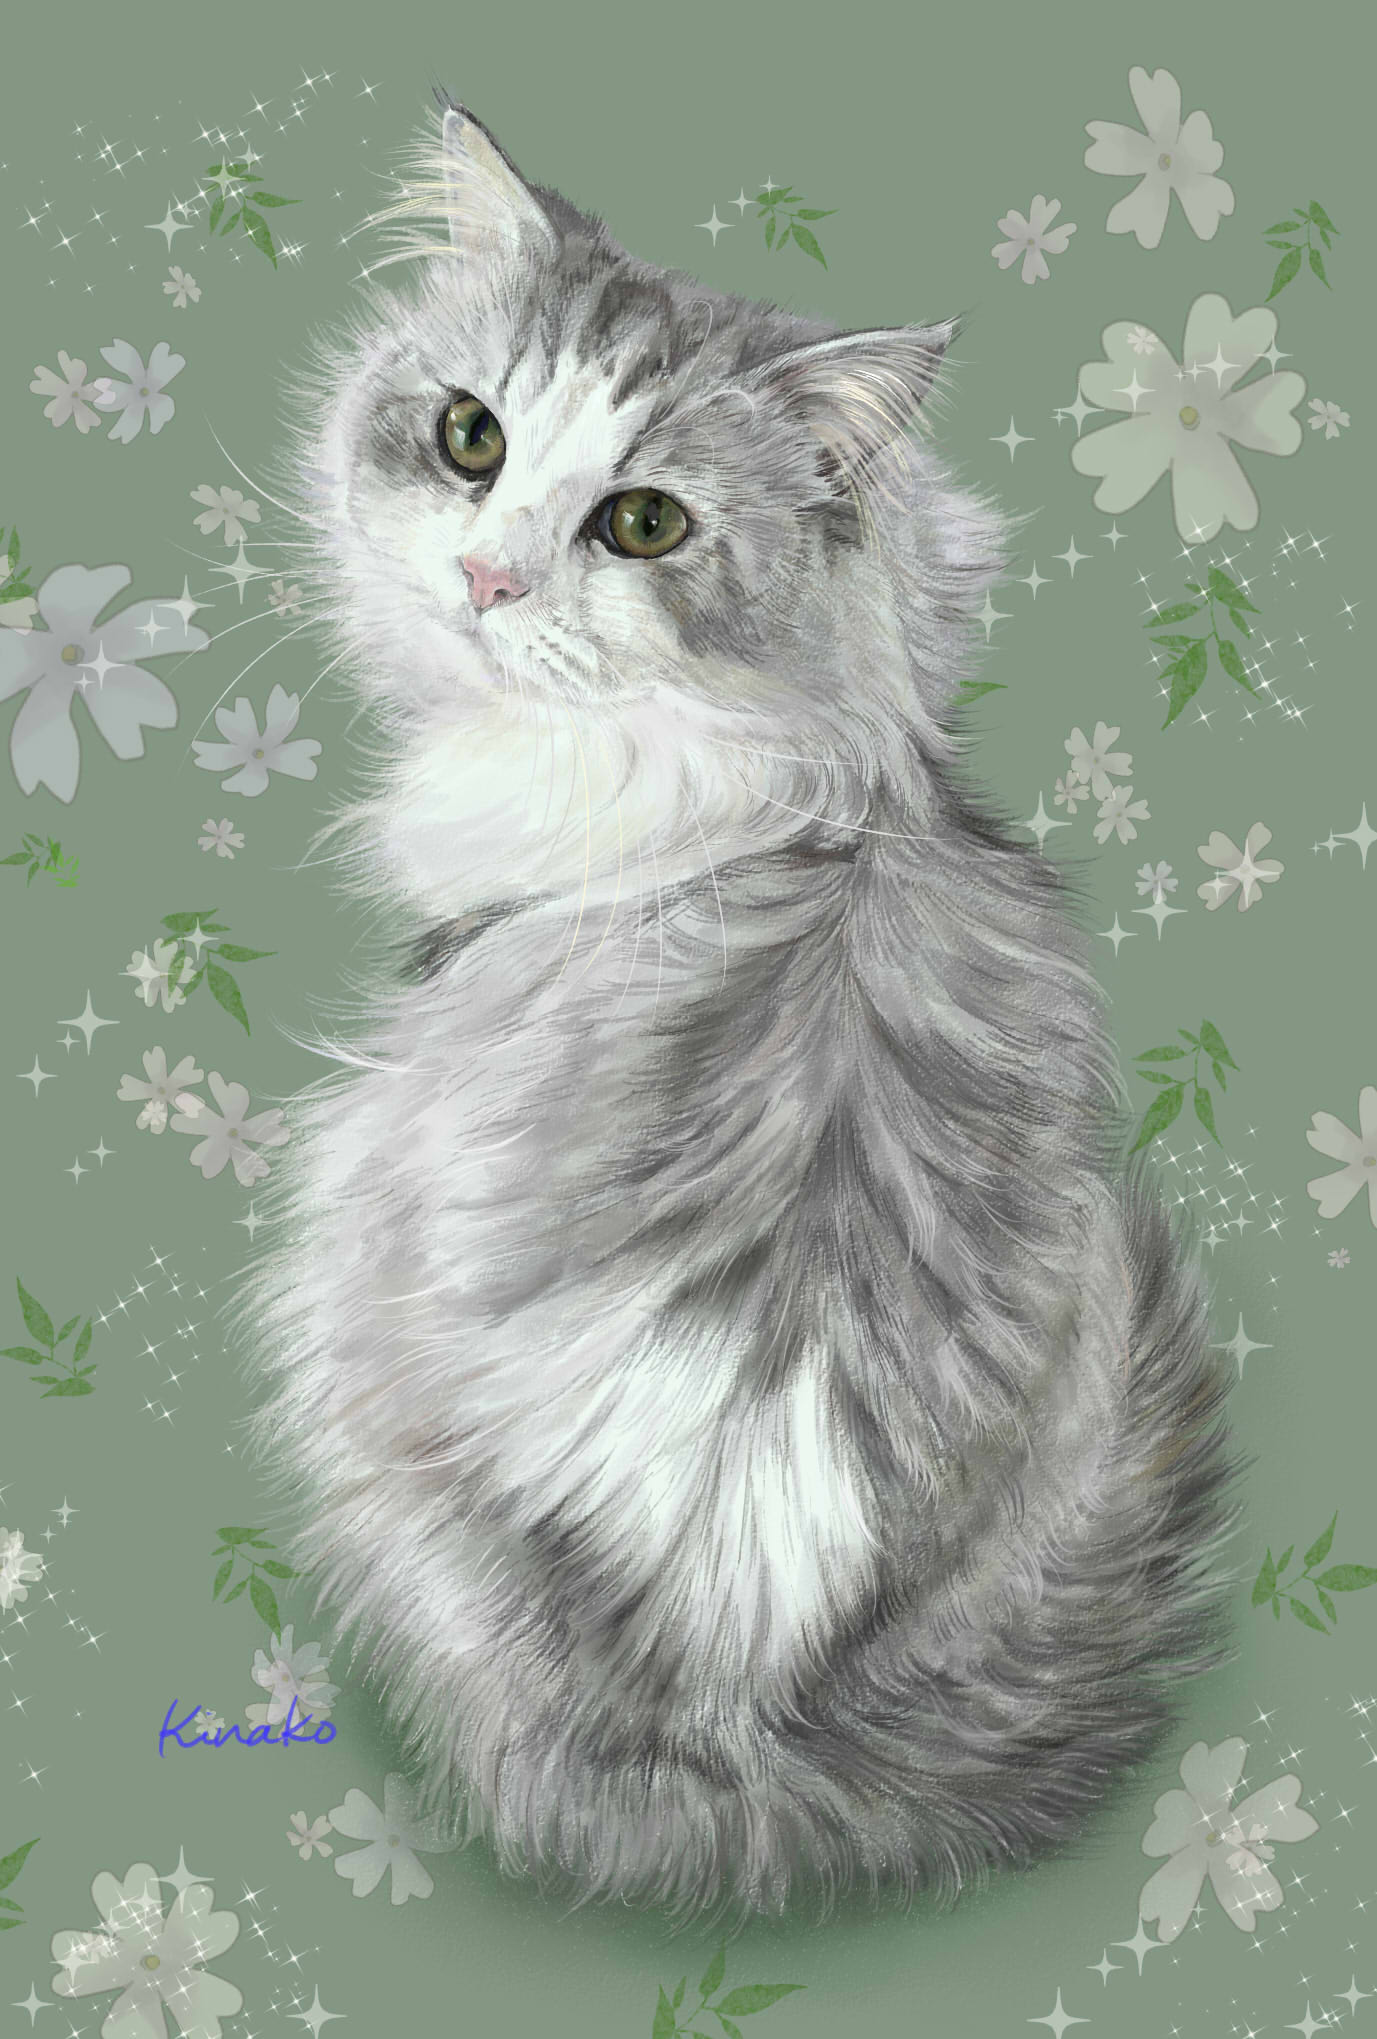 توییتر きなこ 猫の絵を描いています در توییتر スコティッシュフォールドのトムさん 背景をかえて 2枚目です 花のスタンプで 壁紙風にしてみました 猫絵 Cat Drawing 猫イラスト 猫画 スコティッシュフォールド T Co Zwtqwuzptq